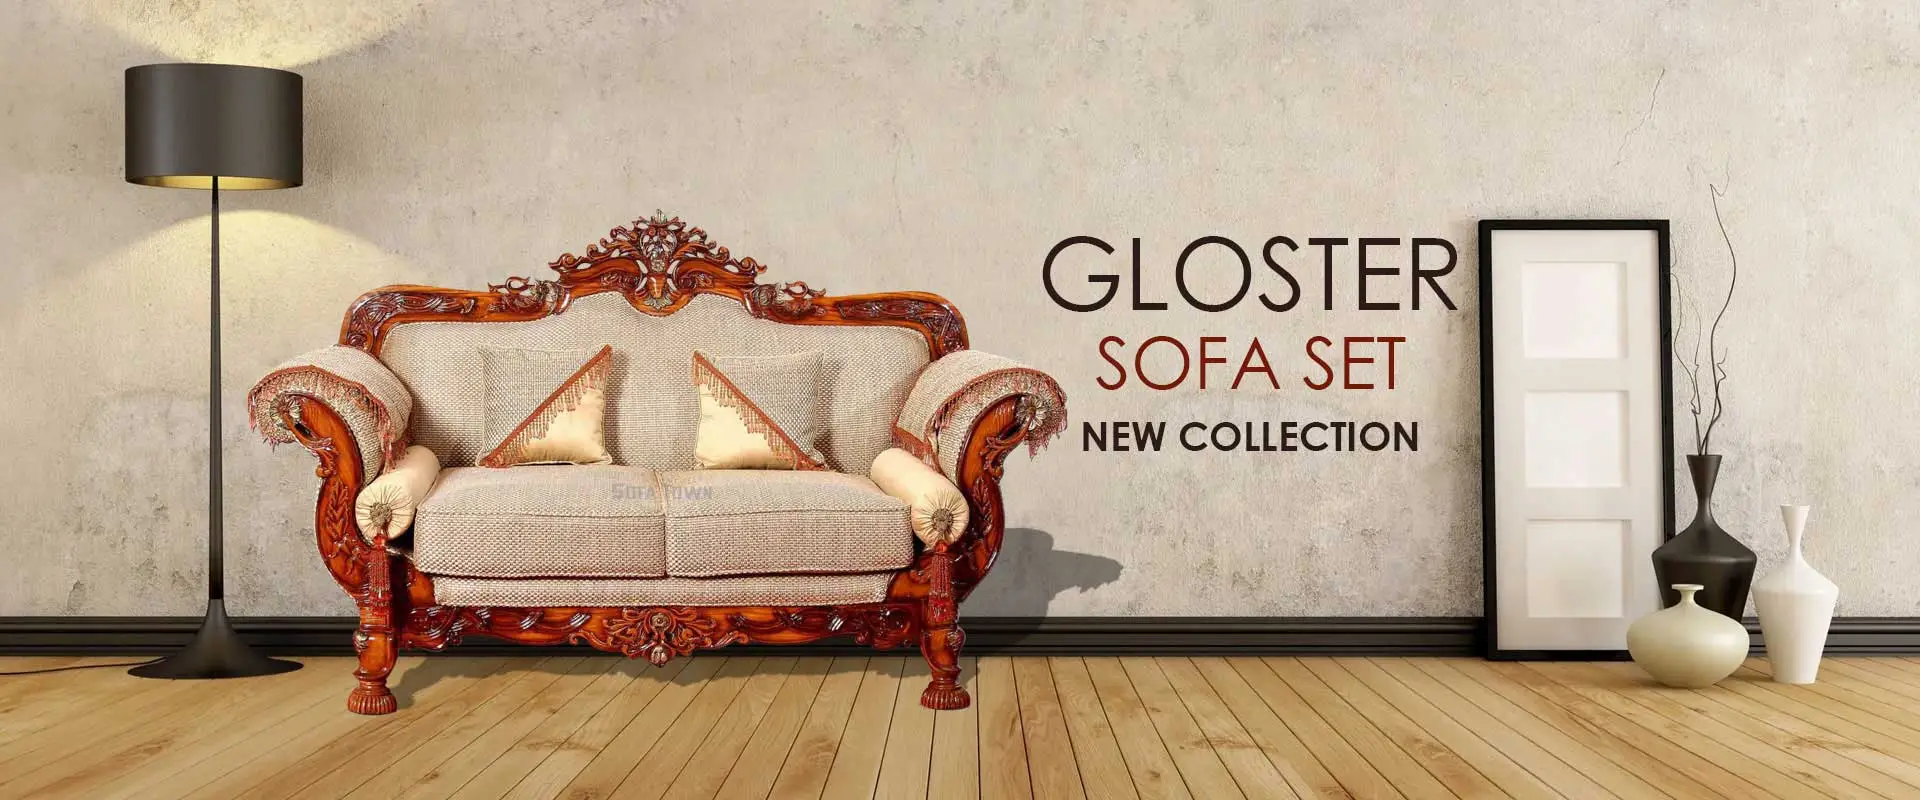 Gloster Sofa Set  Manufacturers in Balangir